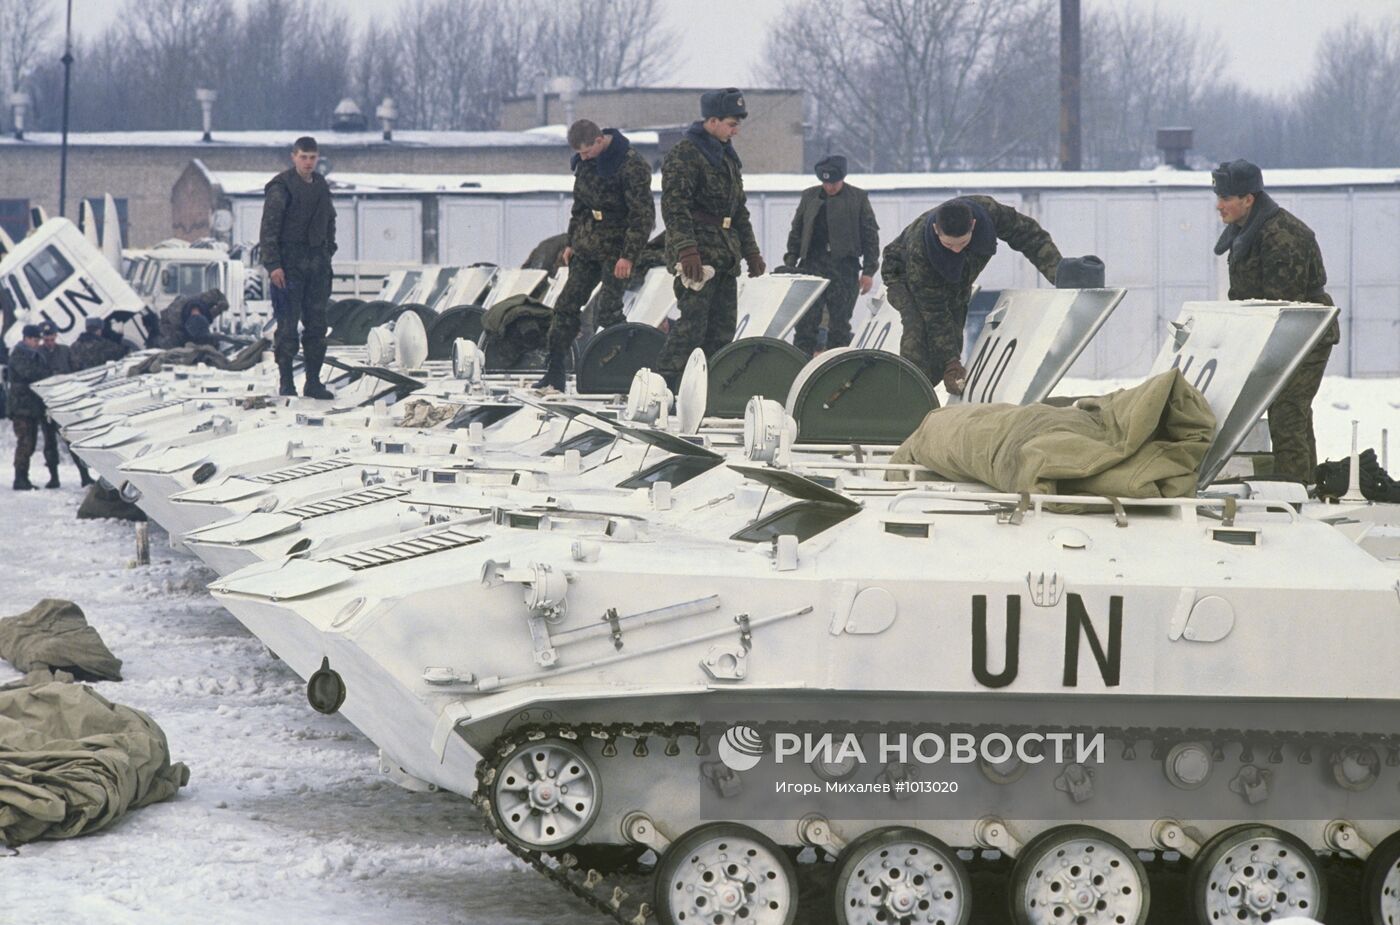 Отправка российских солдат ВДВ в Югославию